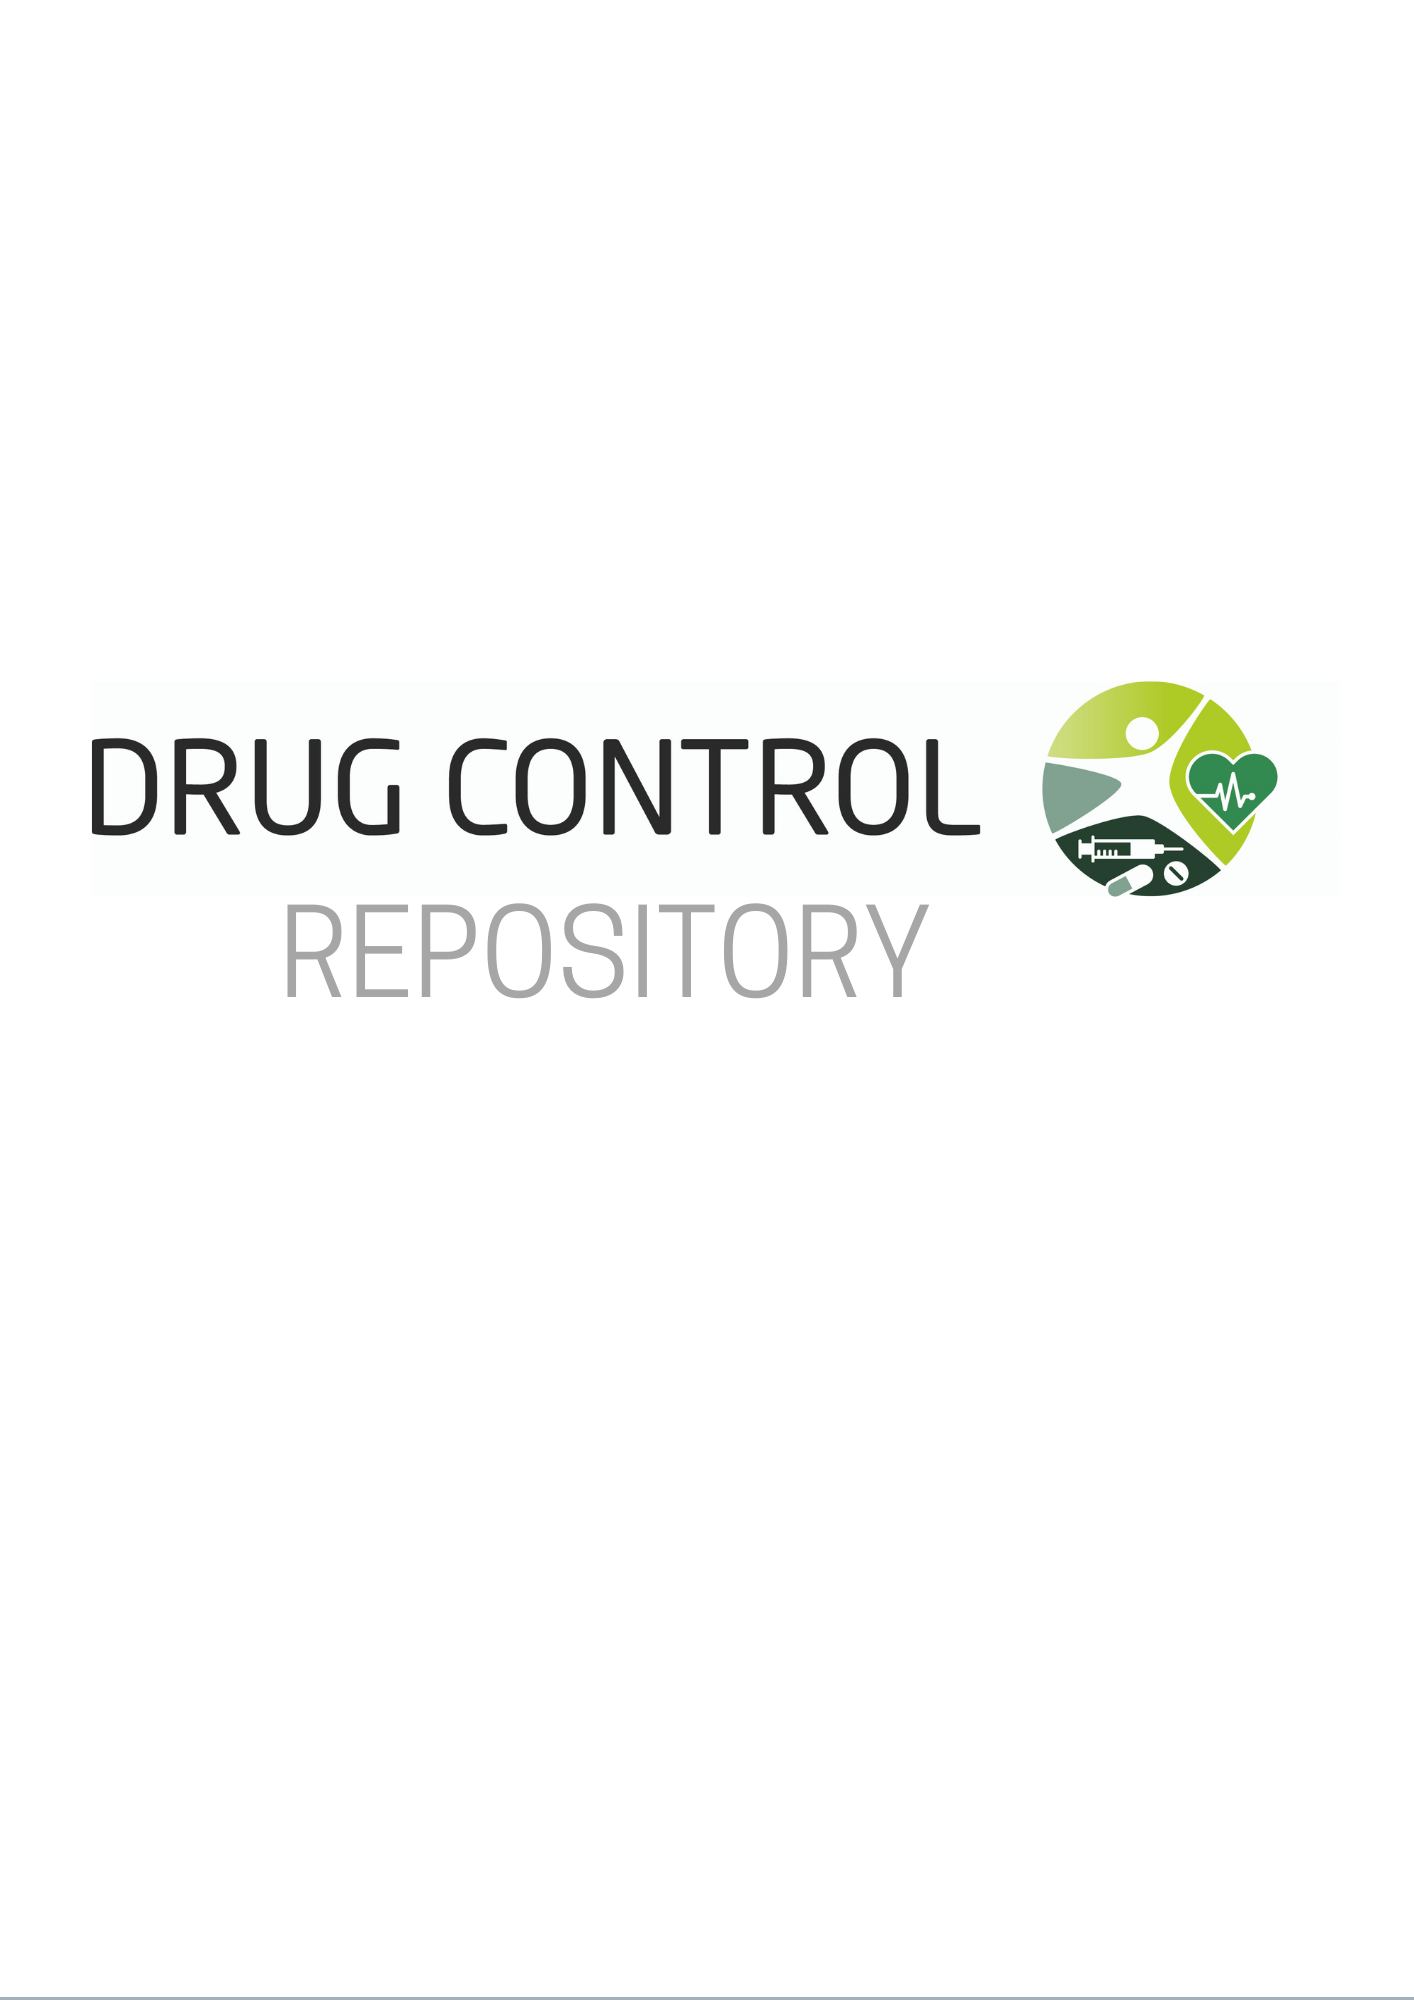 <div style="text-align: center;"><a href="https://sherloc.unodc.org/cld/v3/drugcontrolrepository/">Répertoire de l'ONUDC sur la lutte antidrogue</a></div>